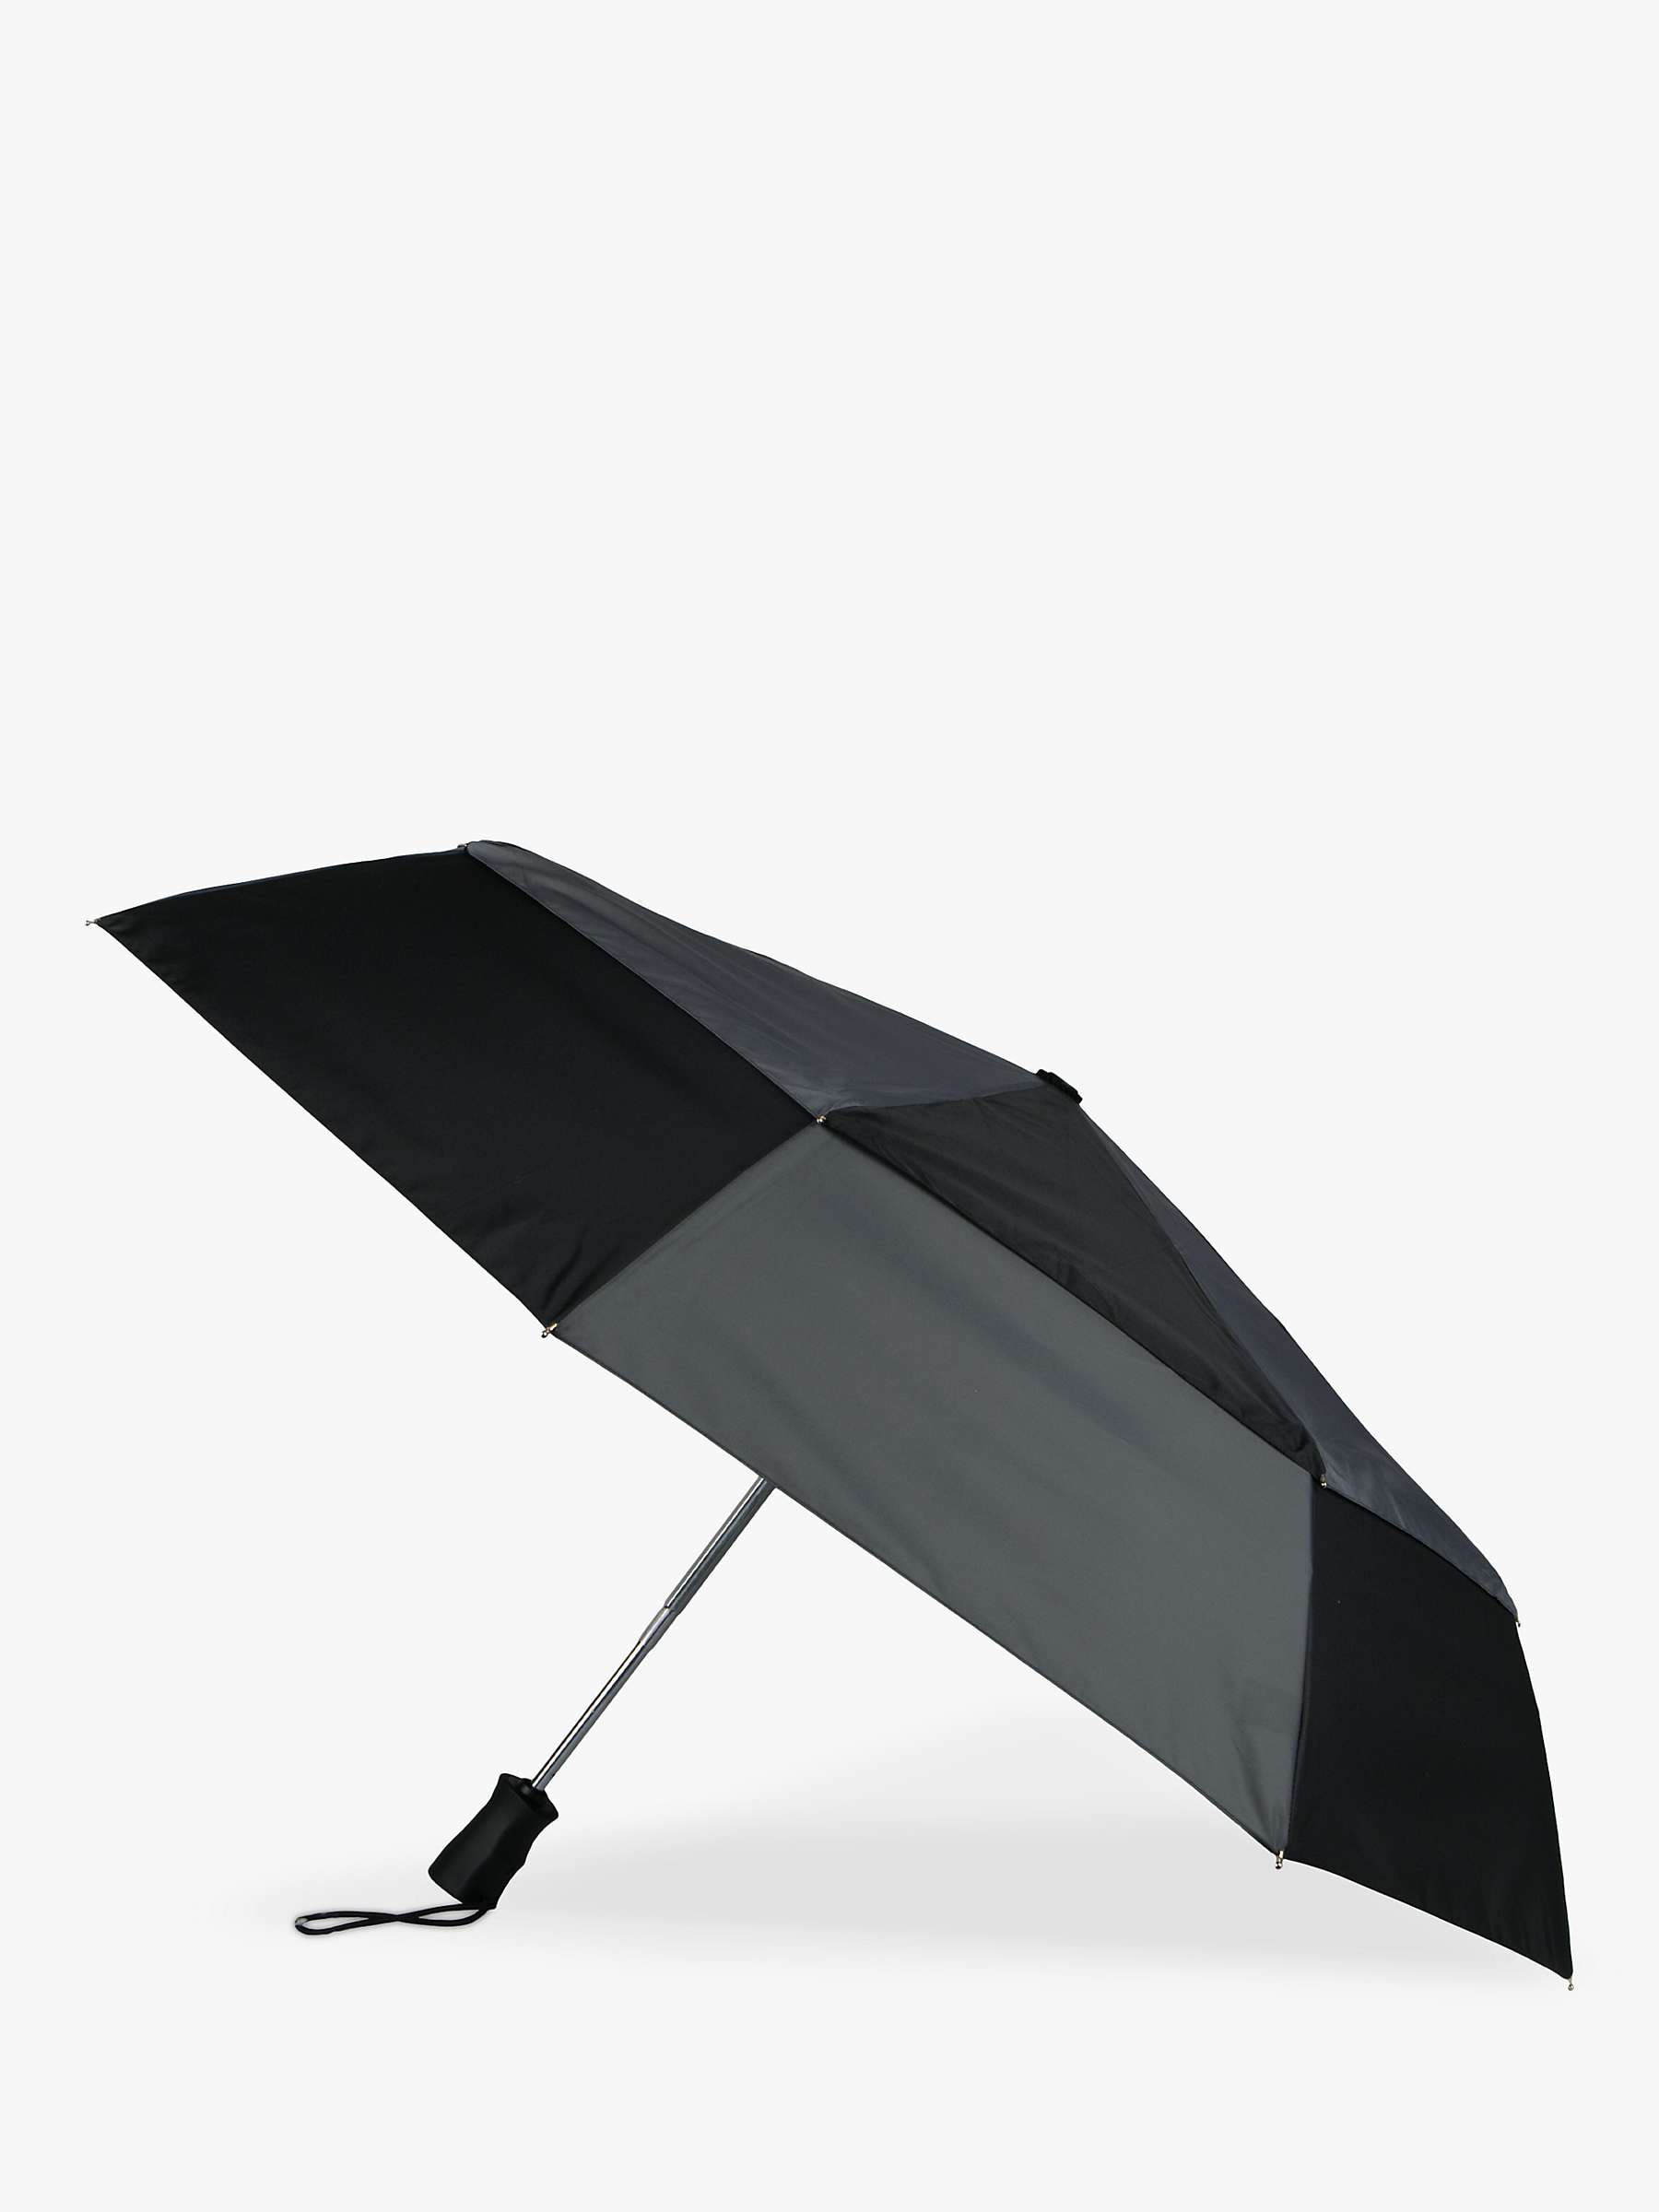 Buy totes Eco Auto Open & Close Umbrella, Black/Charcoal Online at johnlewis.com